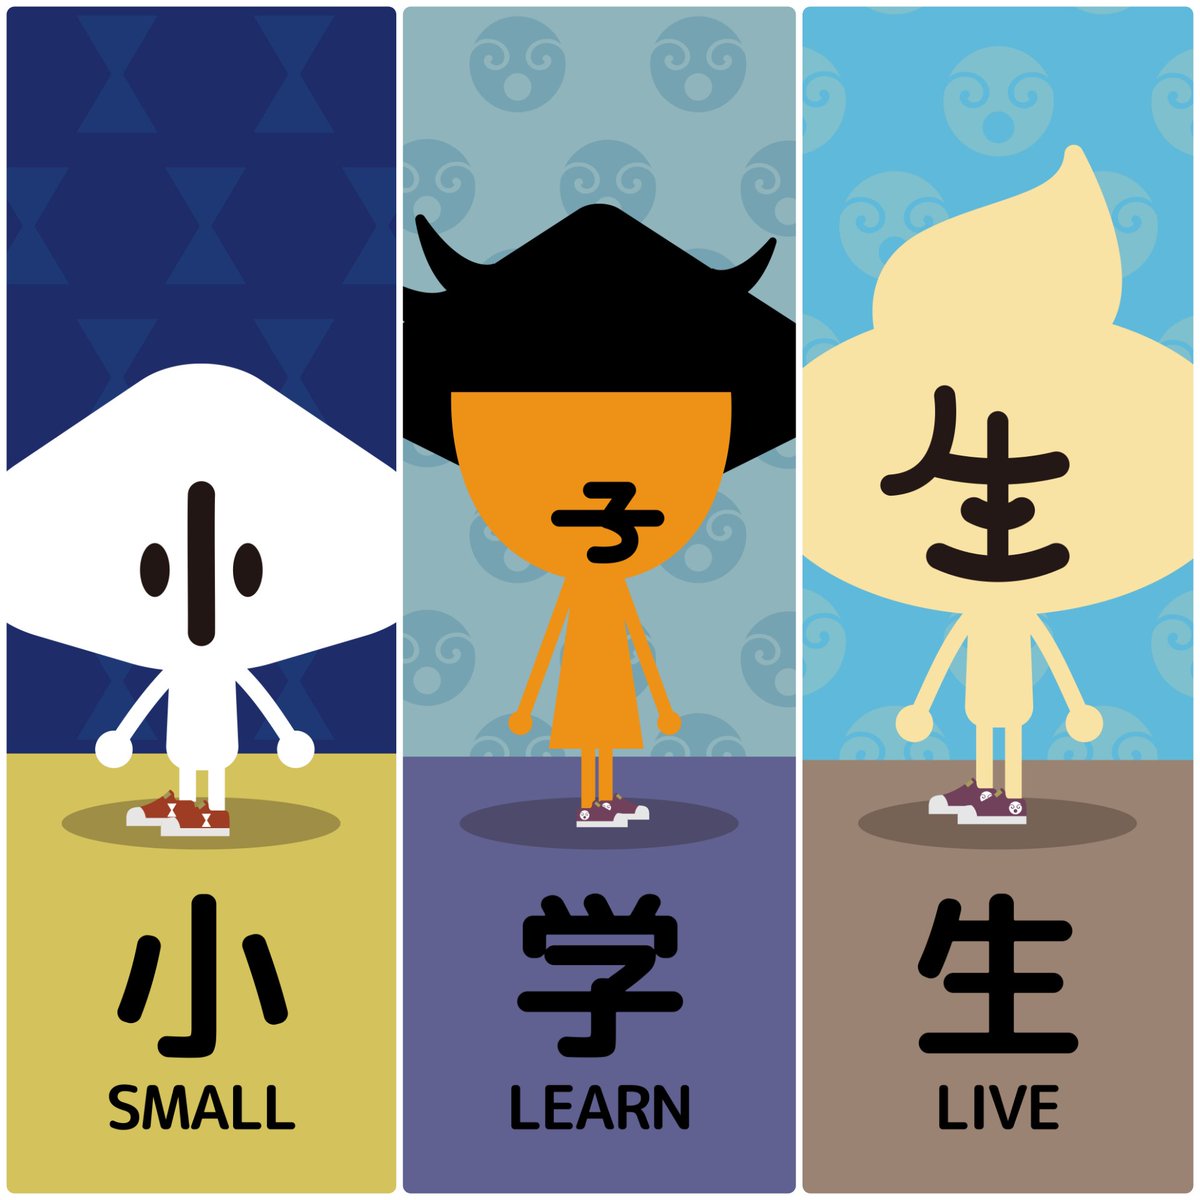 簡単でしたか～❔
小学校1・2年生で習う漢字の「なぞなぞ」でした。
#漢字 #なぞなぞ #漫画 #小学生 